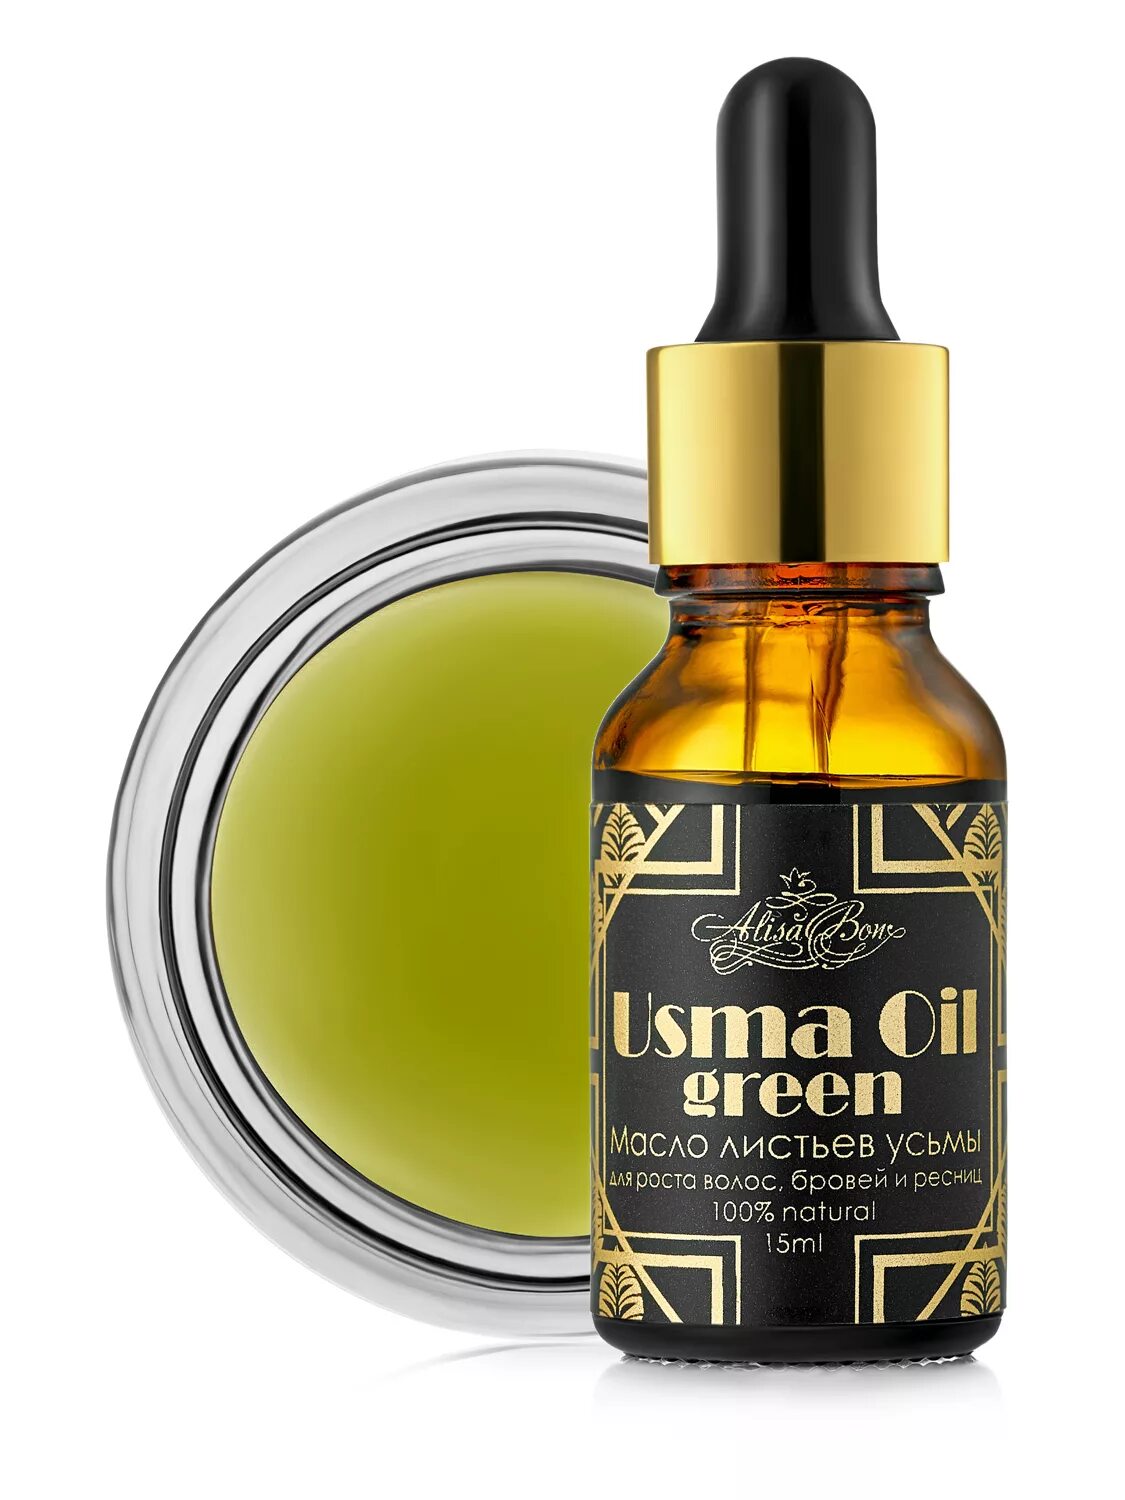 Масло листьев усьмы USMA Oil Green Alisa bon, 15 мл. Масло усьмы для волос USMA Oil. Масло усьмы "USMA Oil" 15 мл.. USMA масло для ресниц и бровей. Масло усьмы для бровей купить